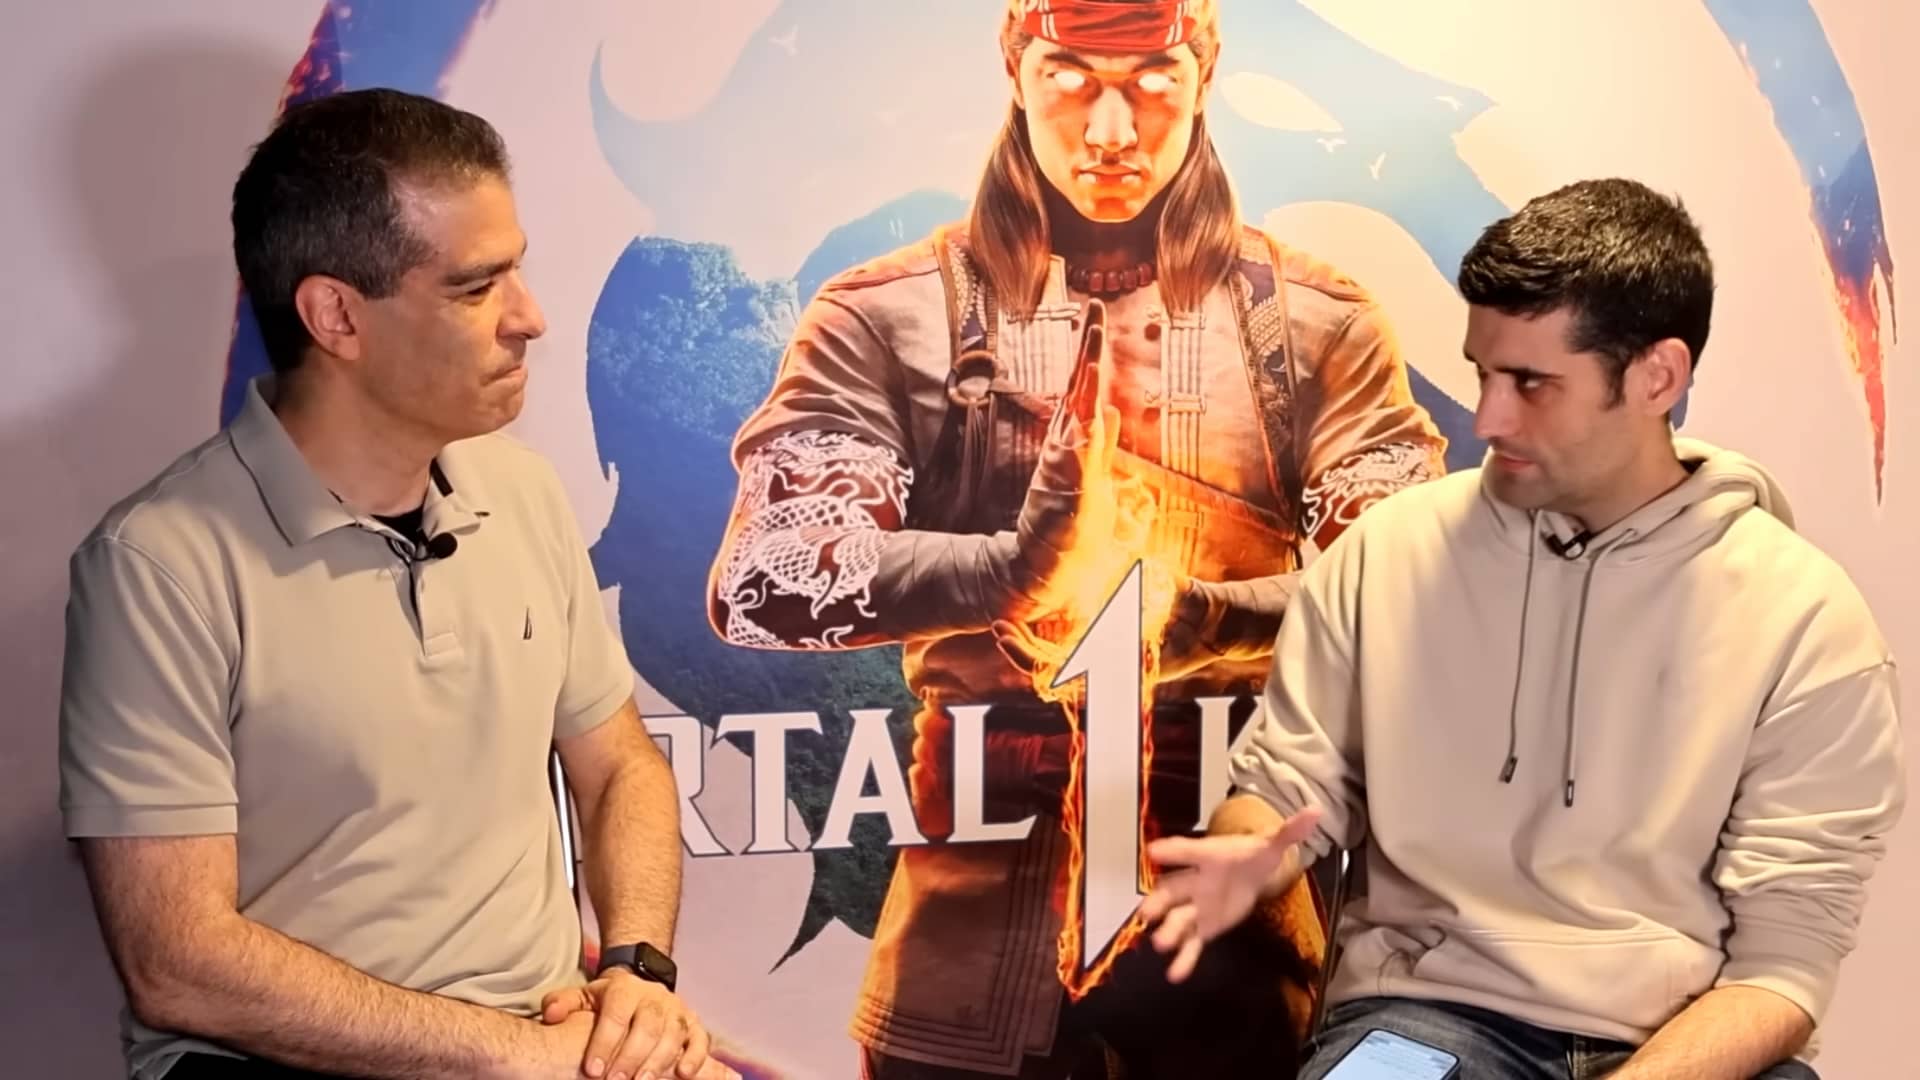 Mortal Kombat: Nova animação ganha trailer exclusivo